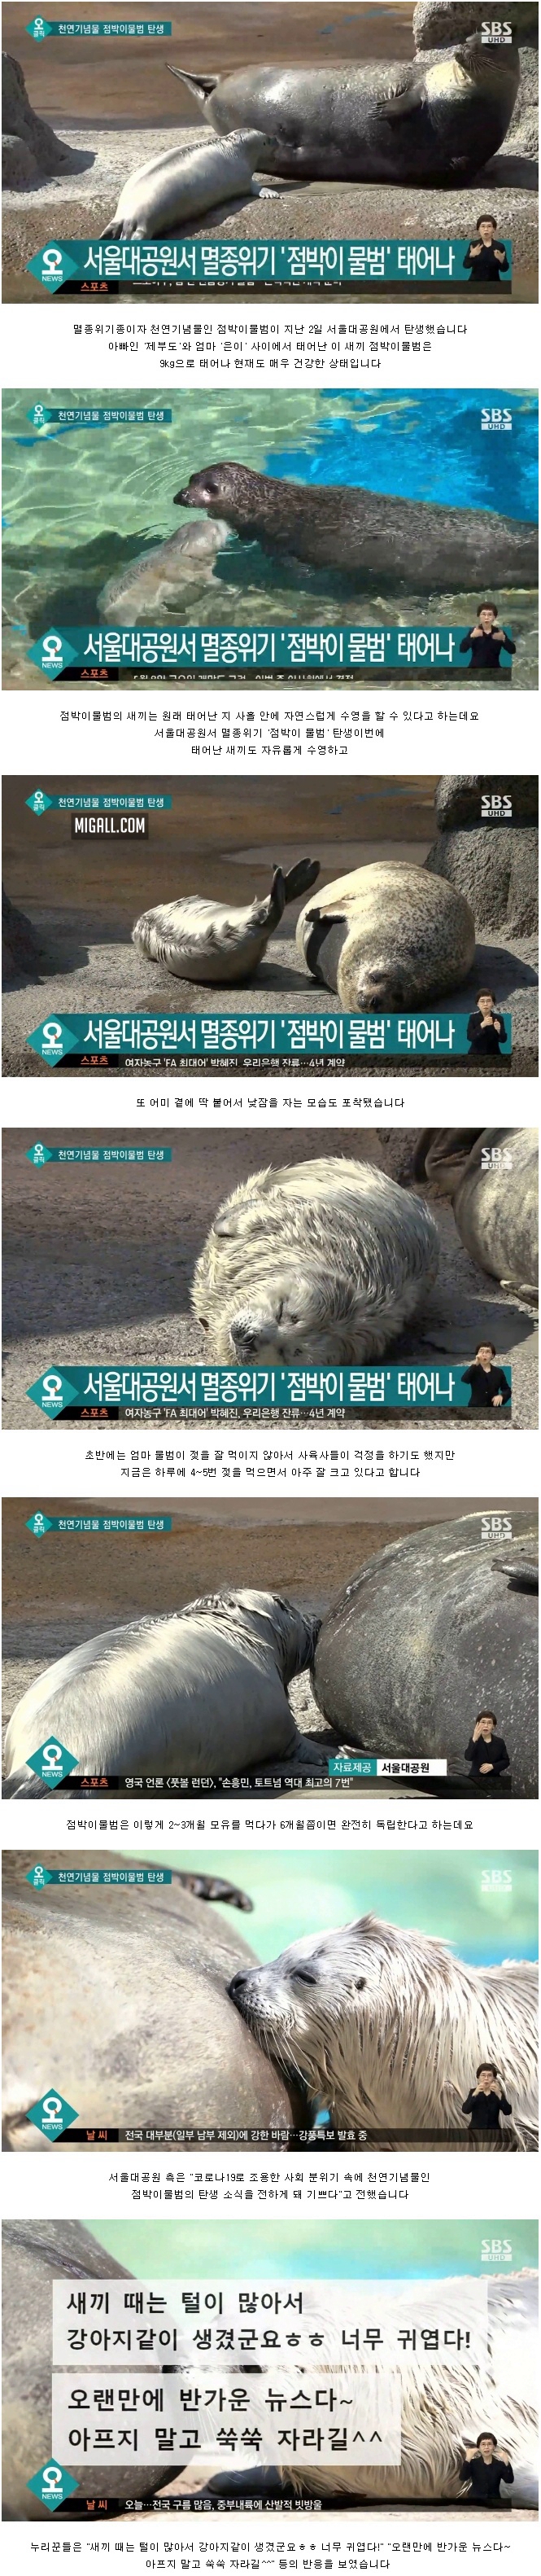 서울대공원에서 탄생한 천연기념물 점박이 물범